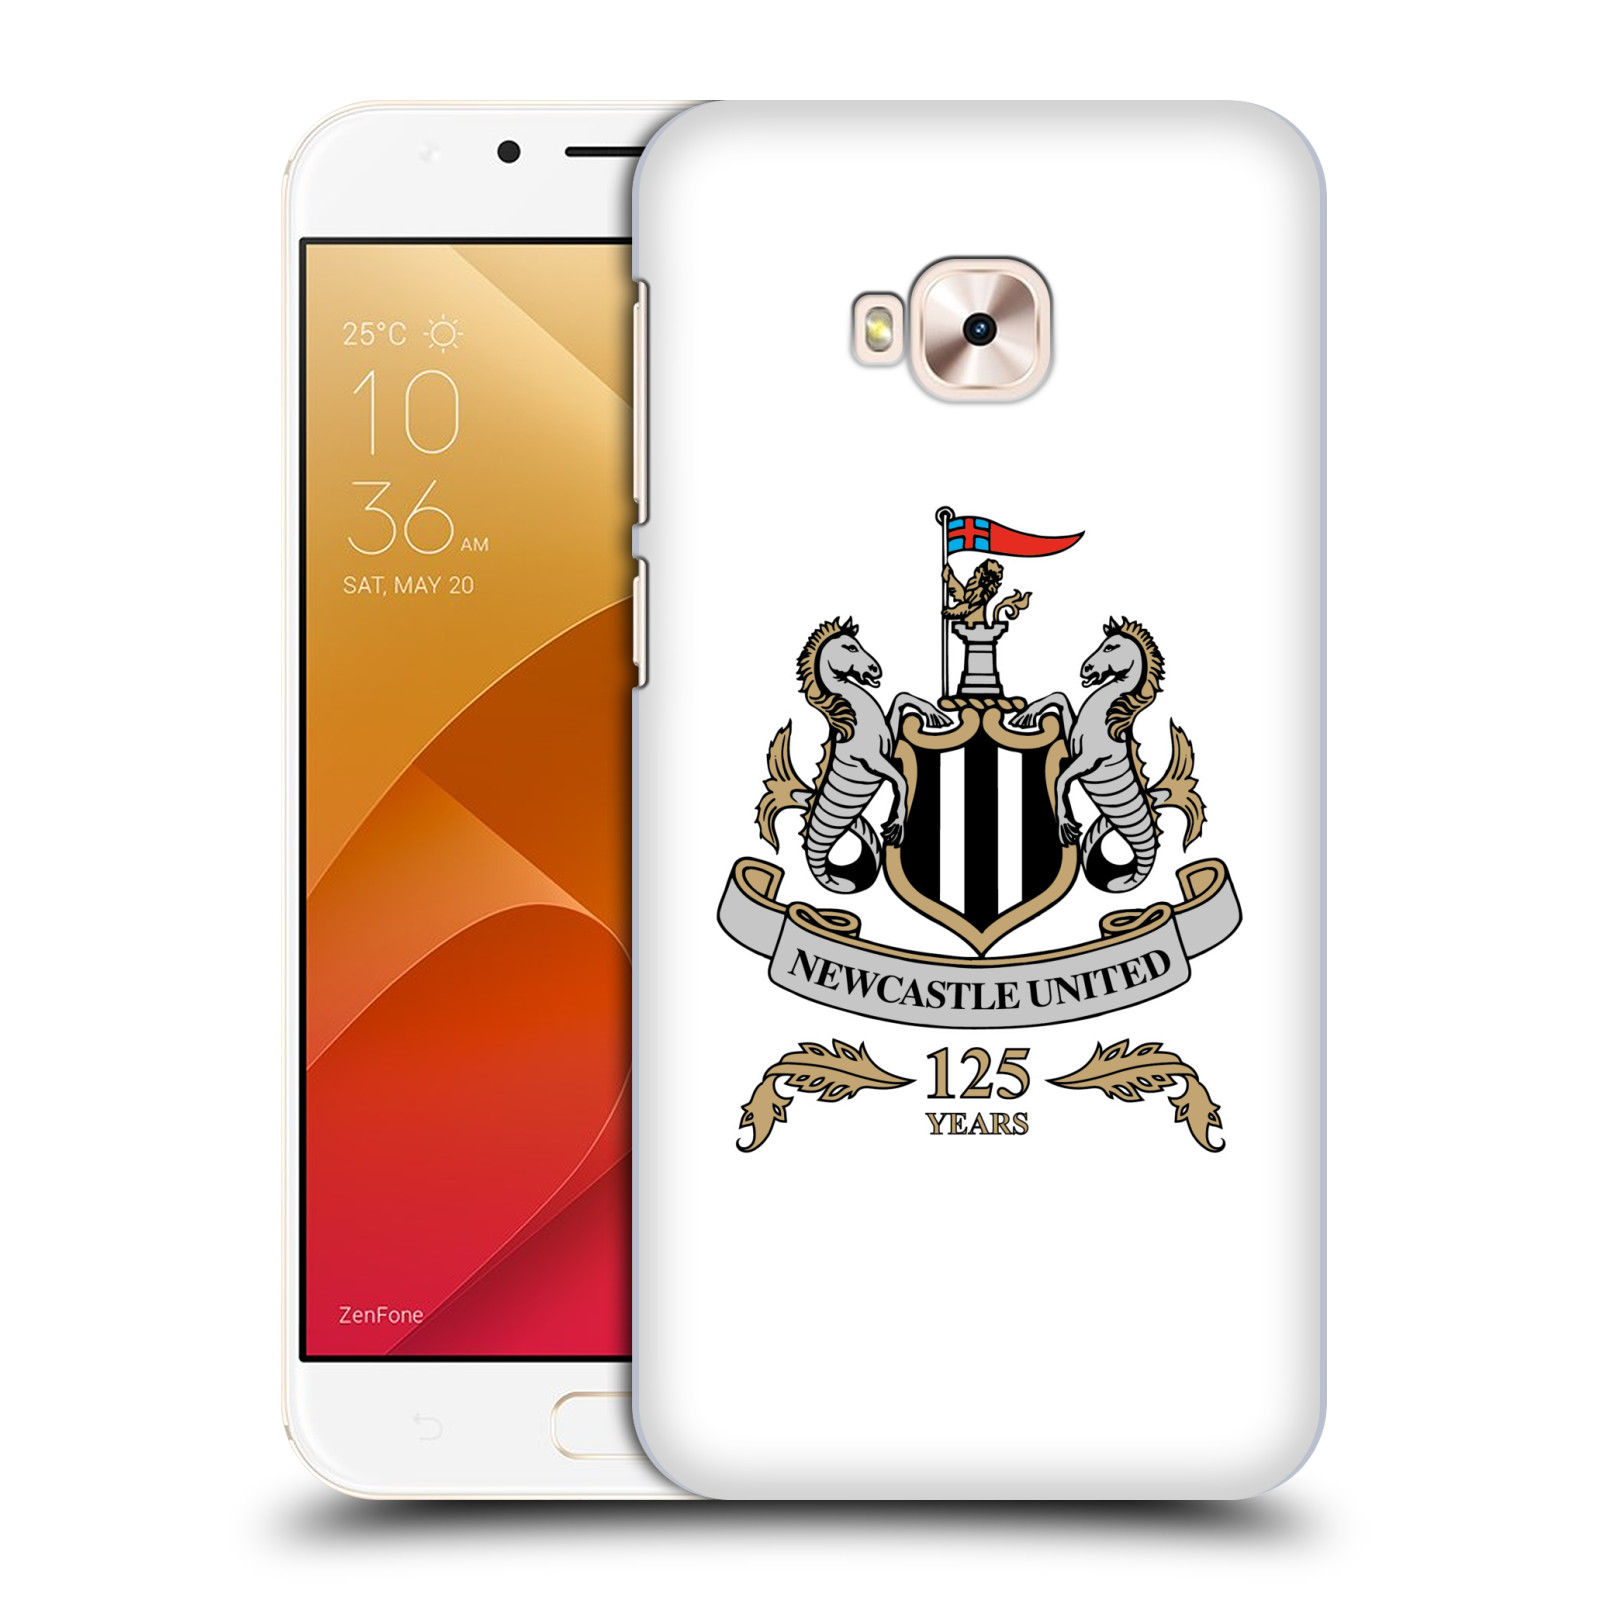 HEAD CASE plastový obal na mobil Asus Zenfone 4 Selfie Pro ZD552KL Fotbalový klub Newcastle United FC průhledný vzor velký znak